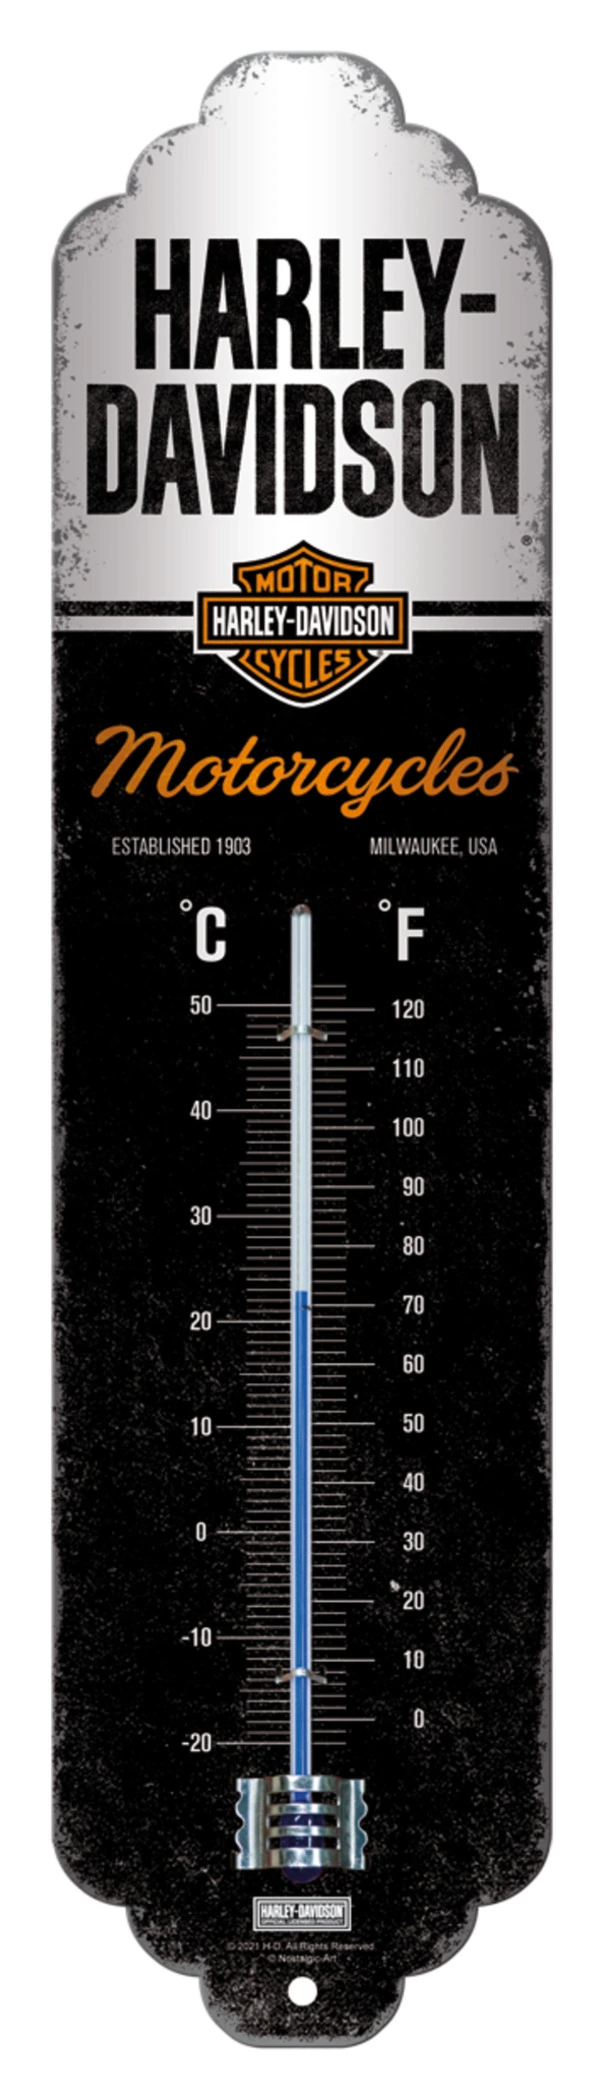 Thermomètre Bougie Biker - Équipement moto